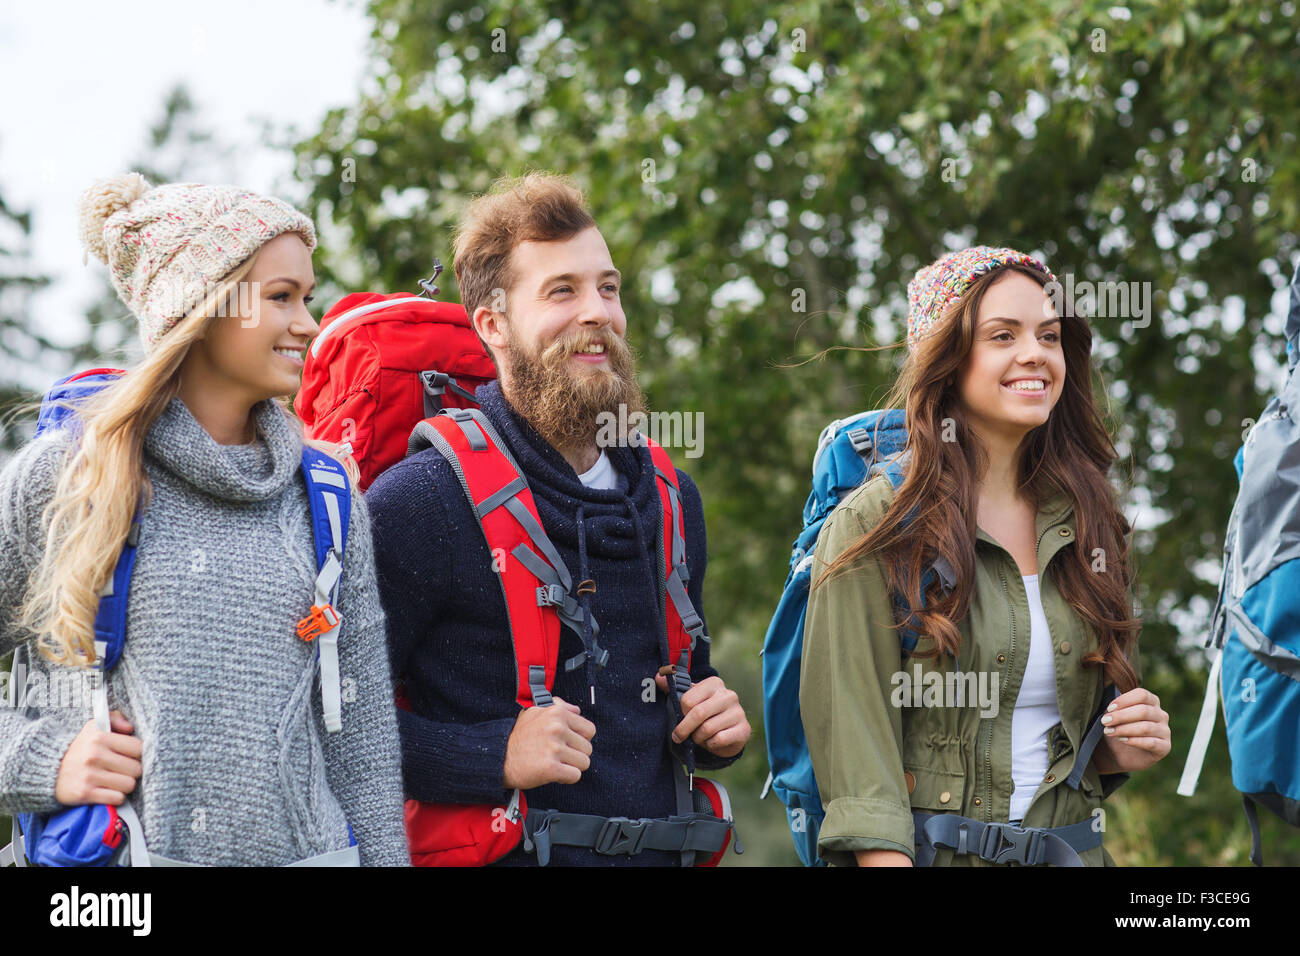 Group of smiling friends avec sacs à dos randonnée Banque D'Images